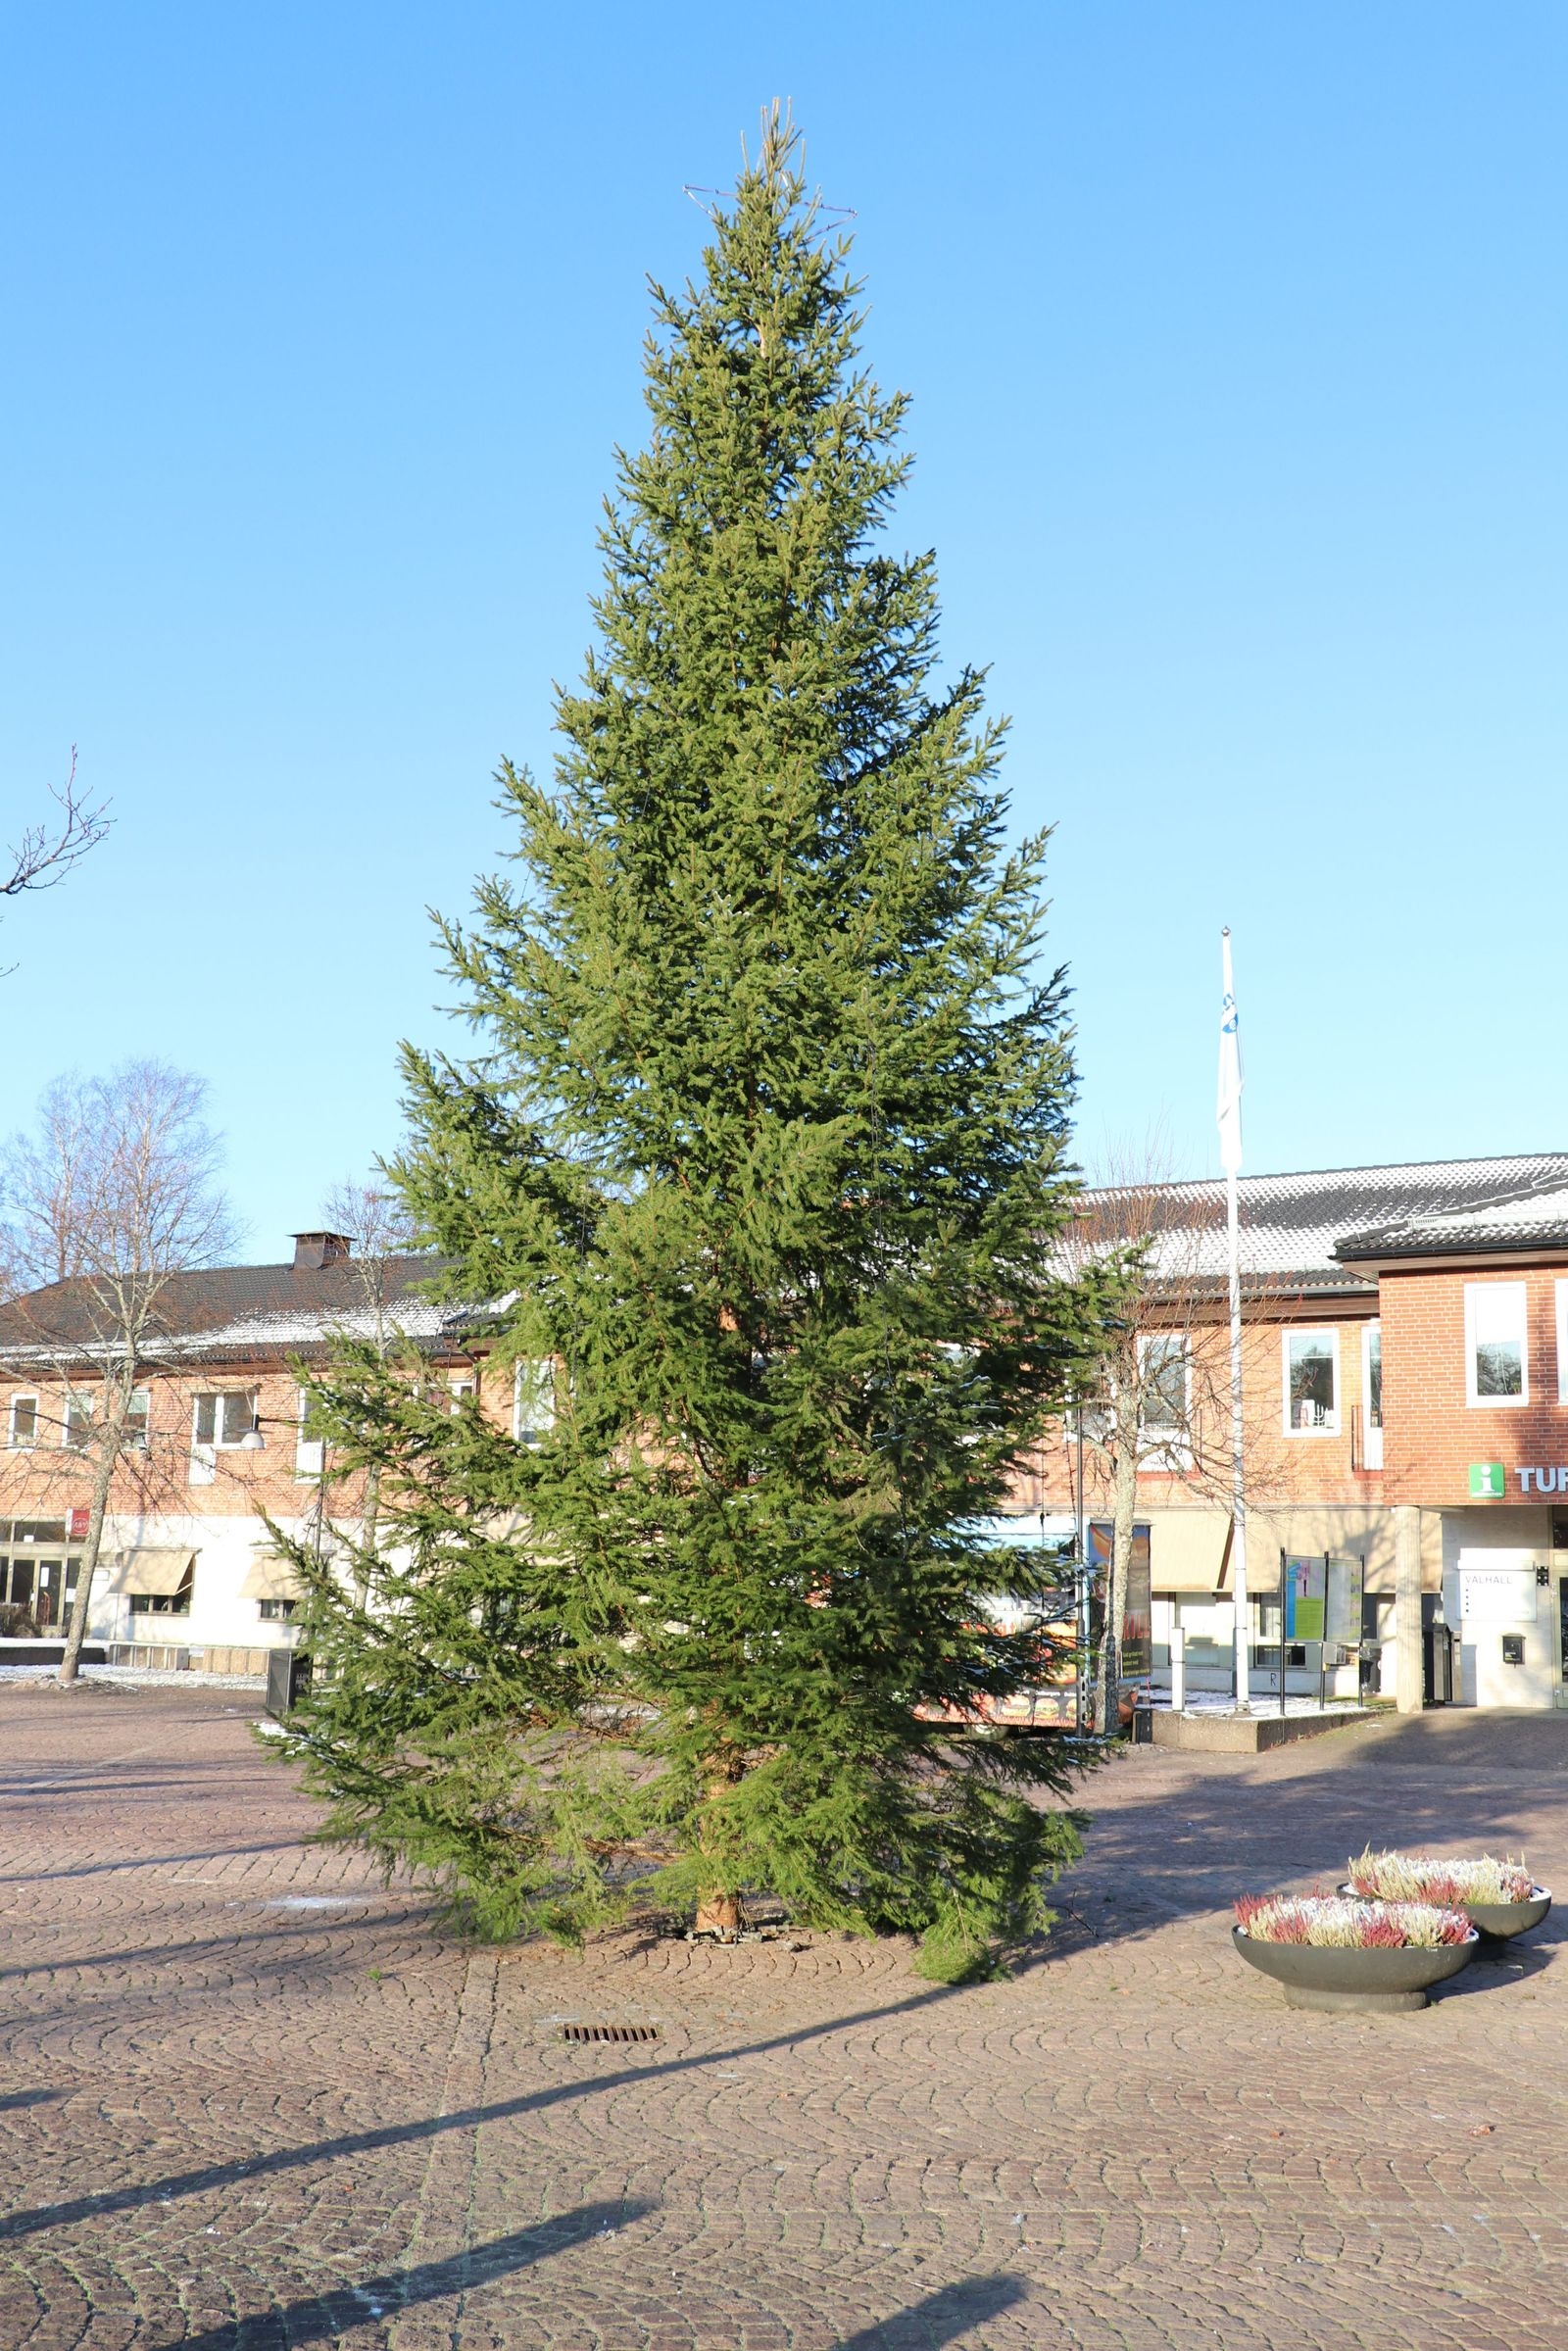 HULTSFRED: Årets julgran på Stora Torget i Hultsfred, har vuxit upp i myllan på fastigheten Hultåsa, söder om orten. Man behövde inte be om lov efter det är kommunens egen mark.